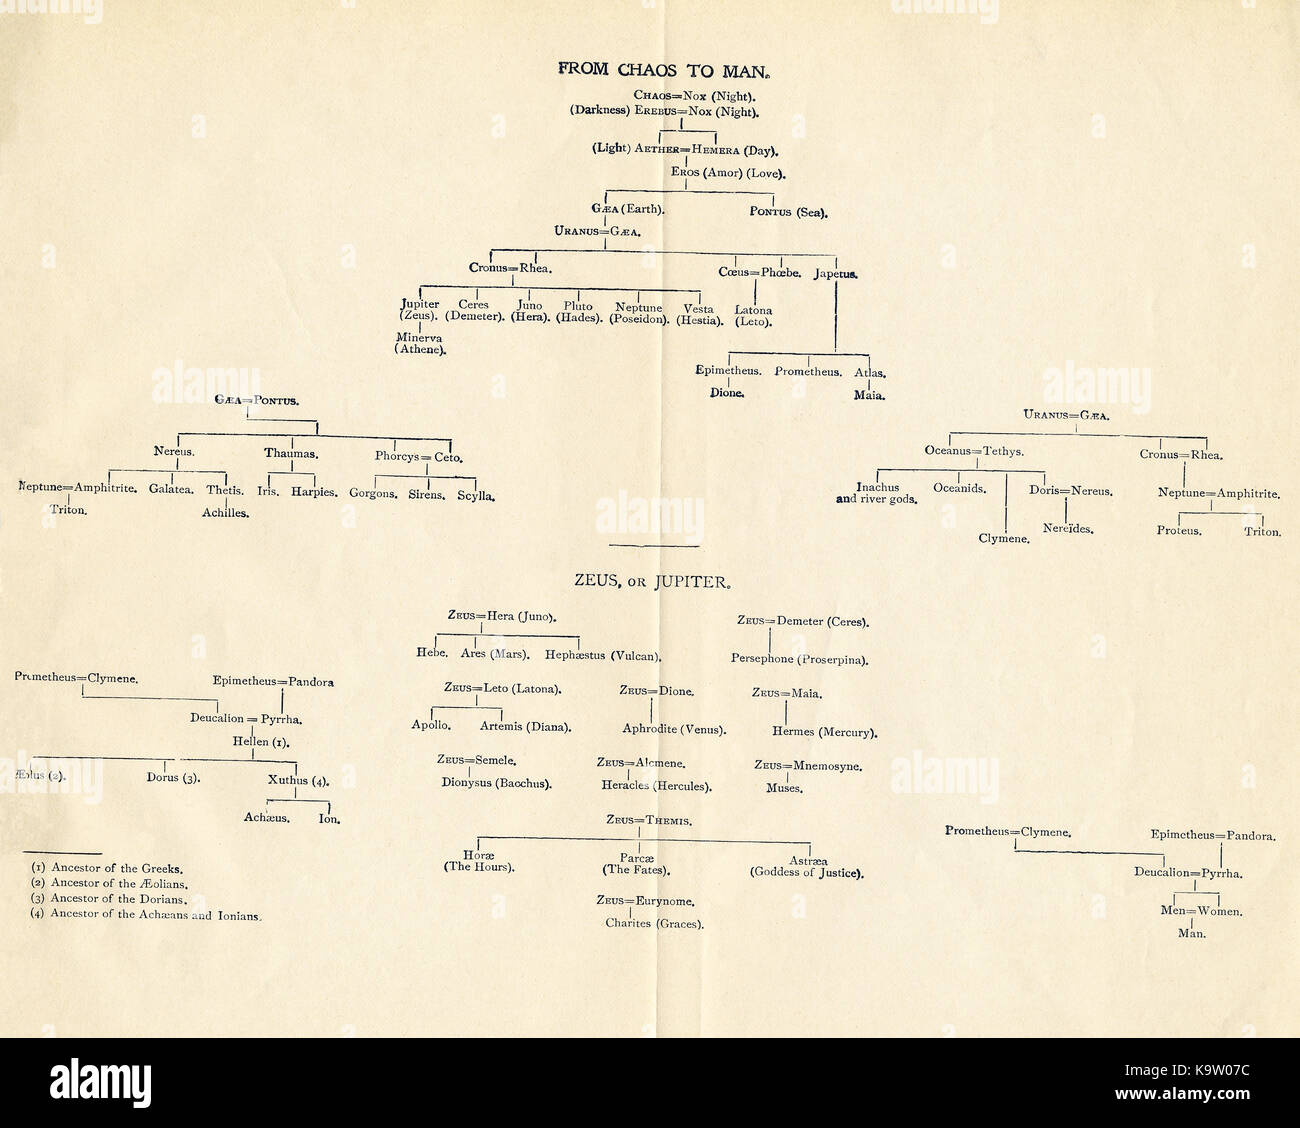 Este gráfico, que data de 1898 muestra la genealogía, de acuerdo a la mitología griega y romana, del linaje de los seres humanos, remontarse al caos. Foto de stock